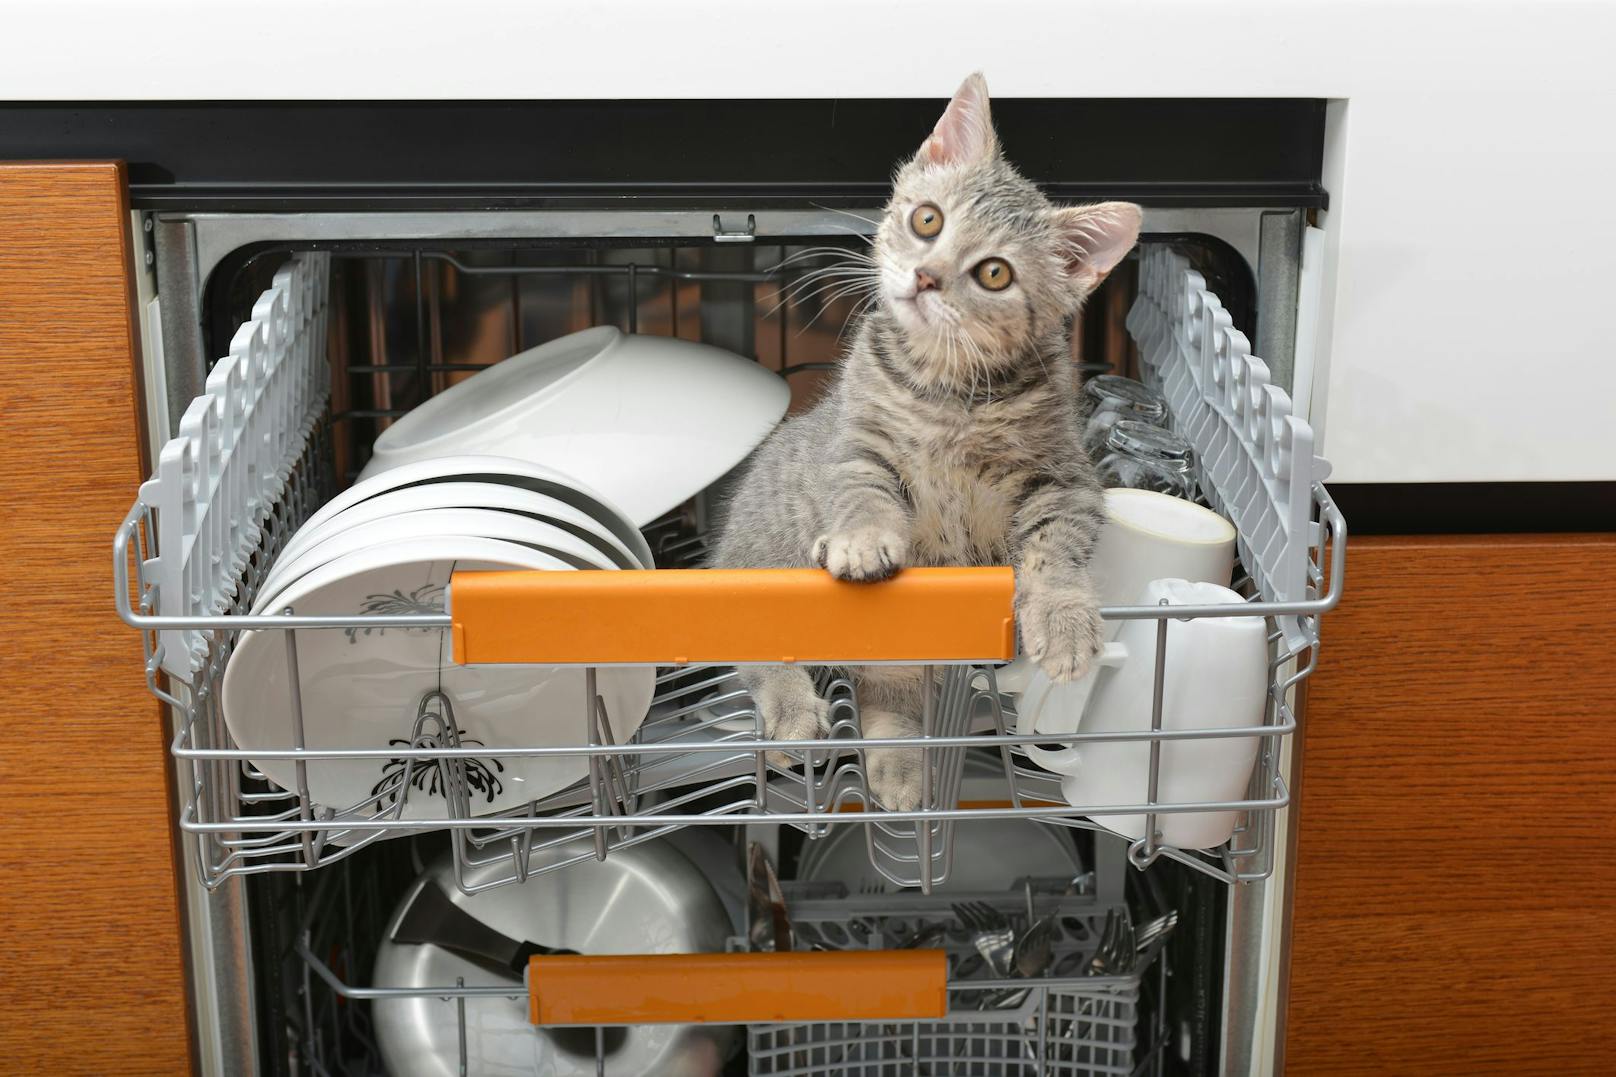 6.) Den Geschirrspüler voll beladen. Aber vor dem Start die Katze entfernen.